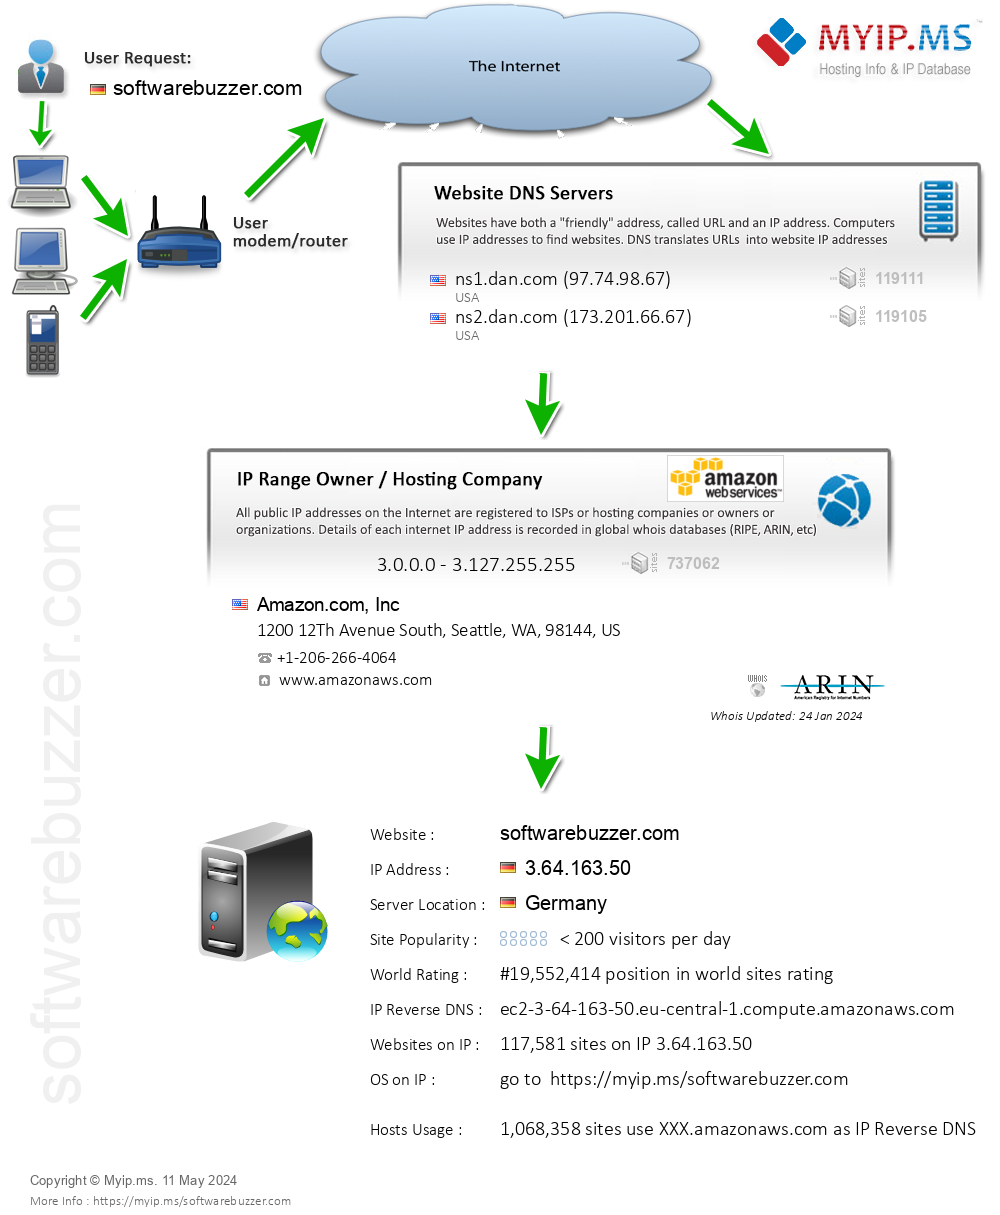 Softwarebuzzer.com - Website Hosting Visual IP Diagram